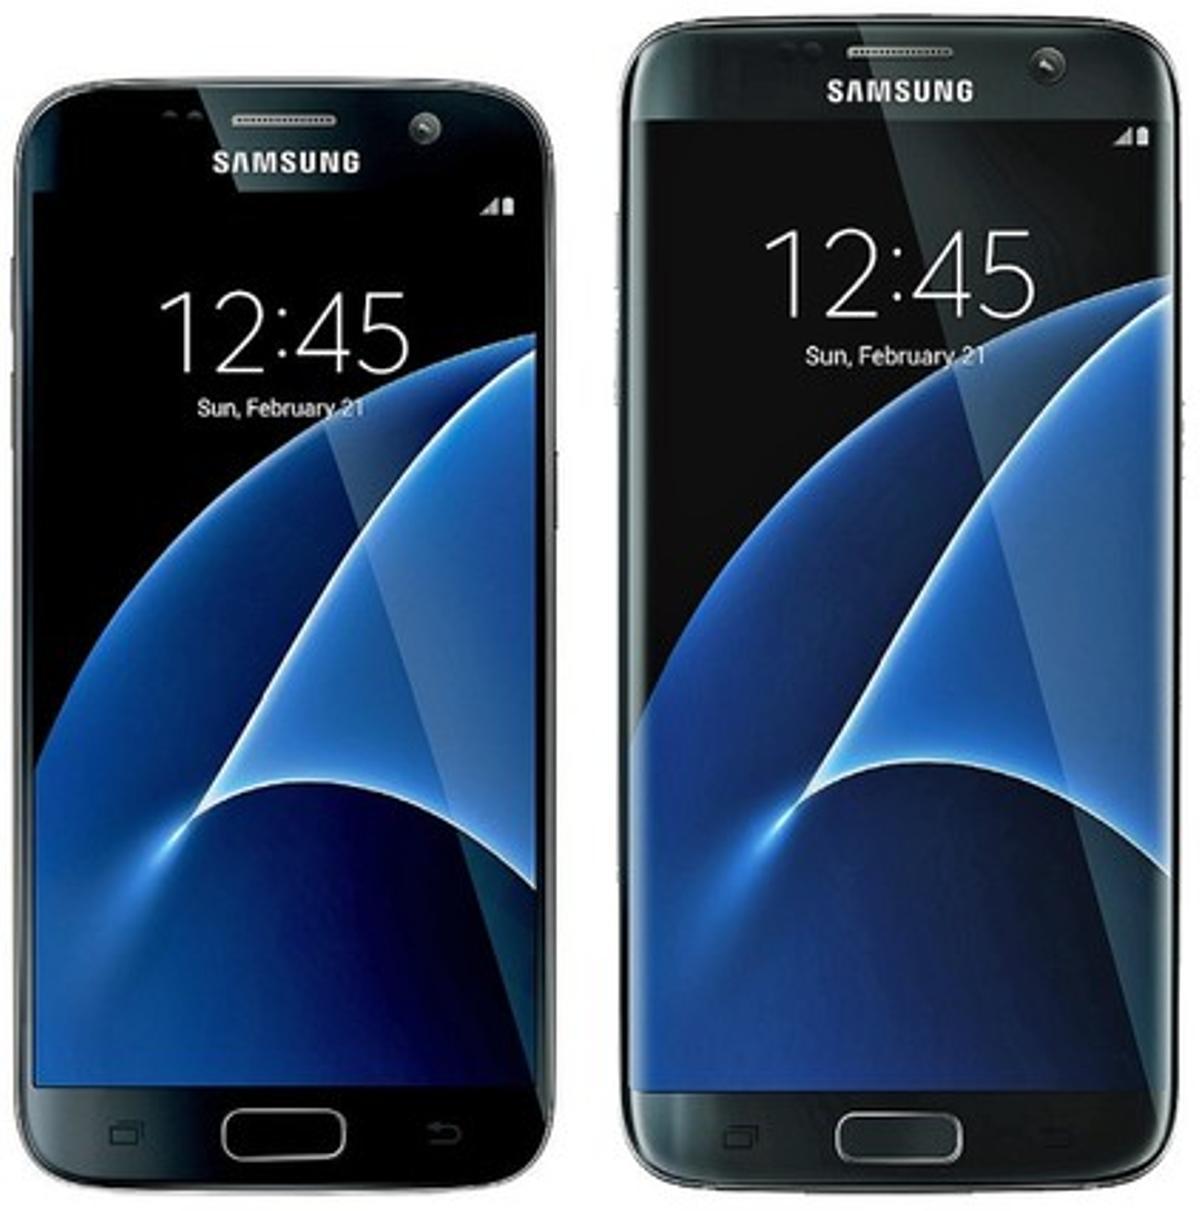 Samsung Galaxy S7.